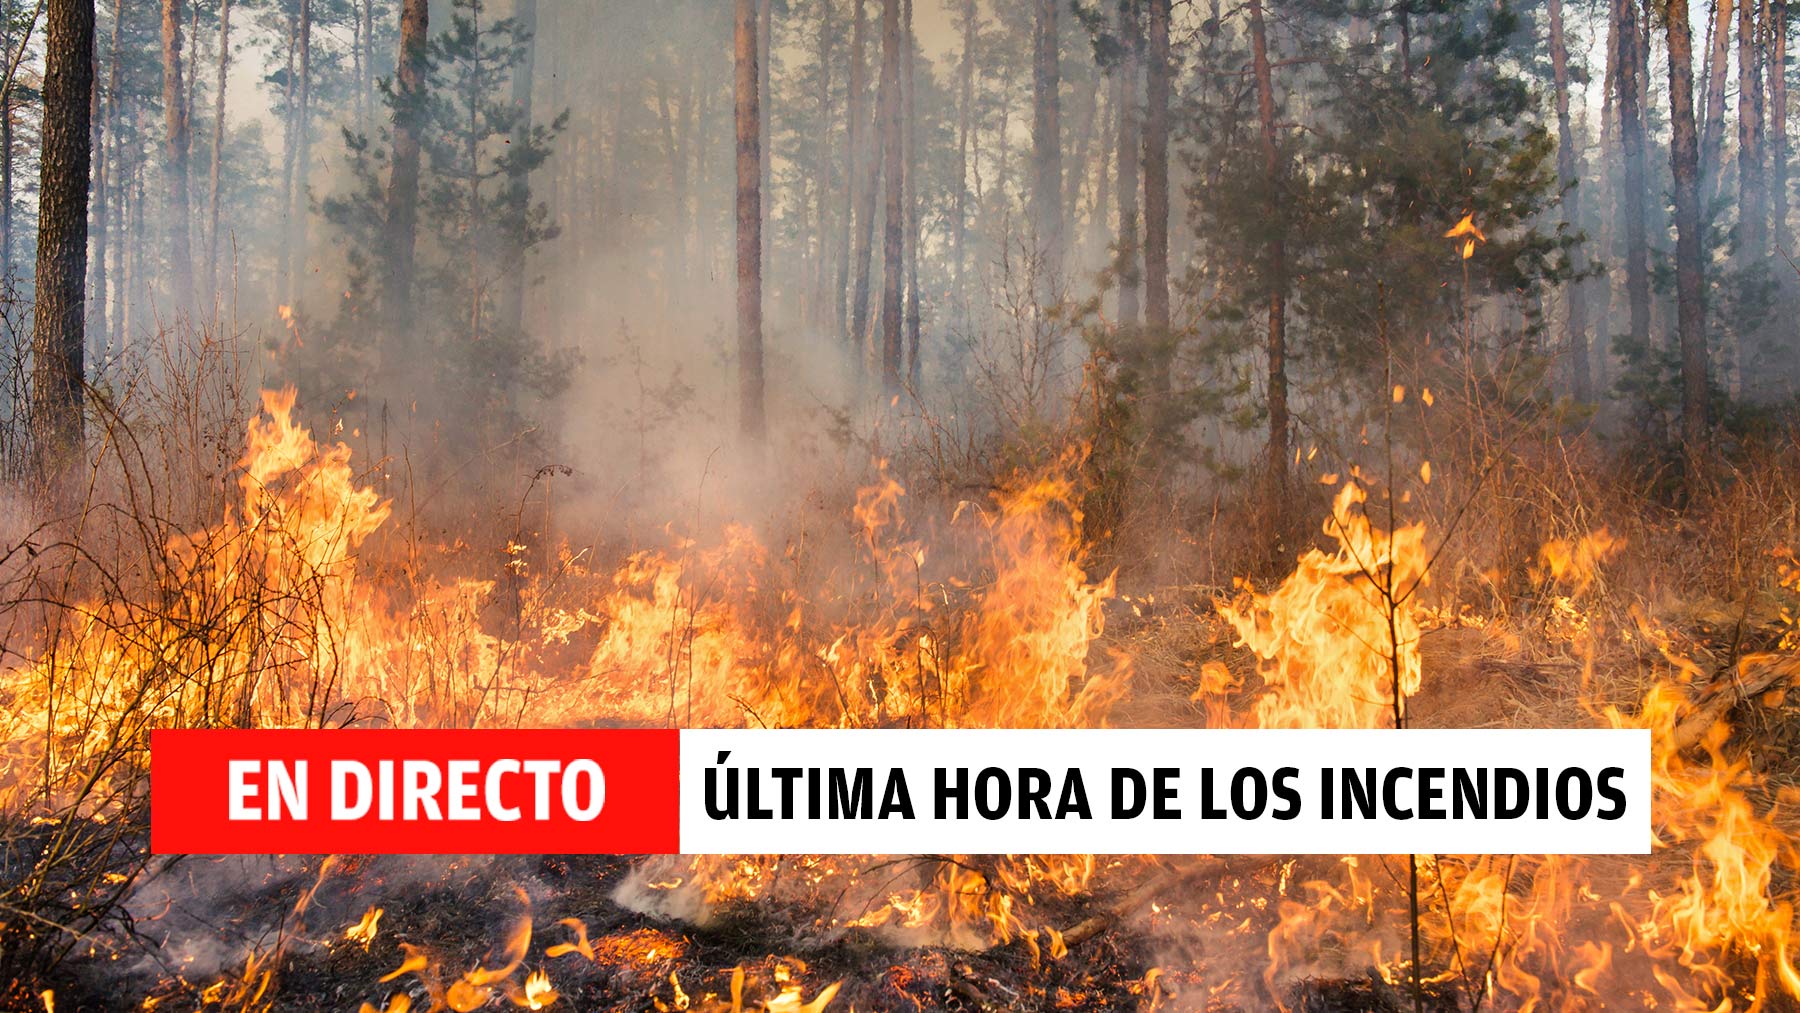 Incendios en España hoy, en directo: última hora de los fuegos activos